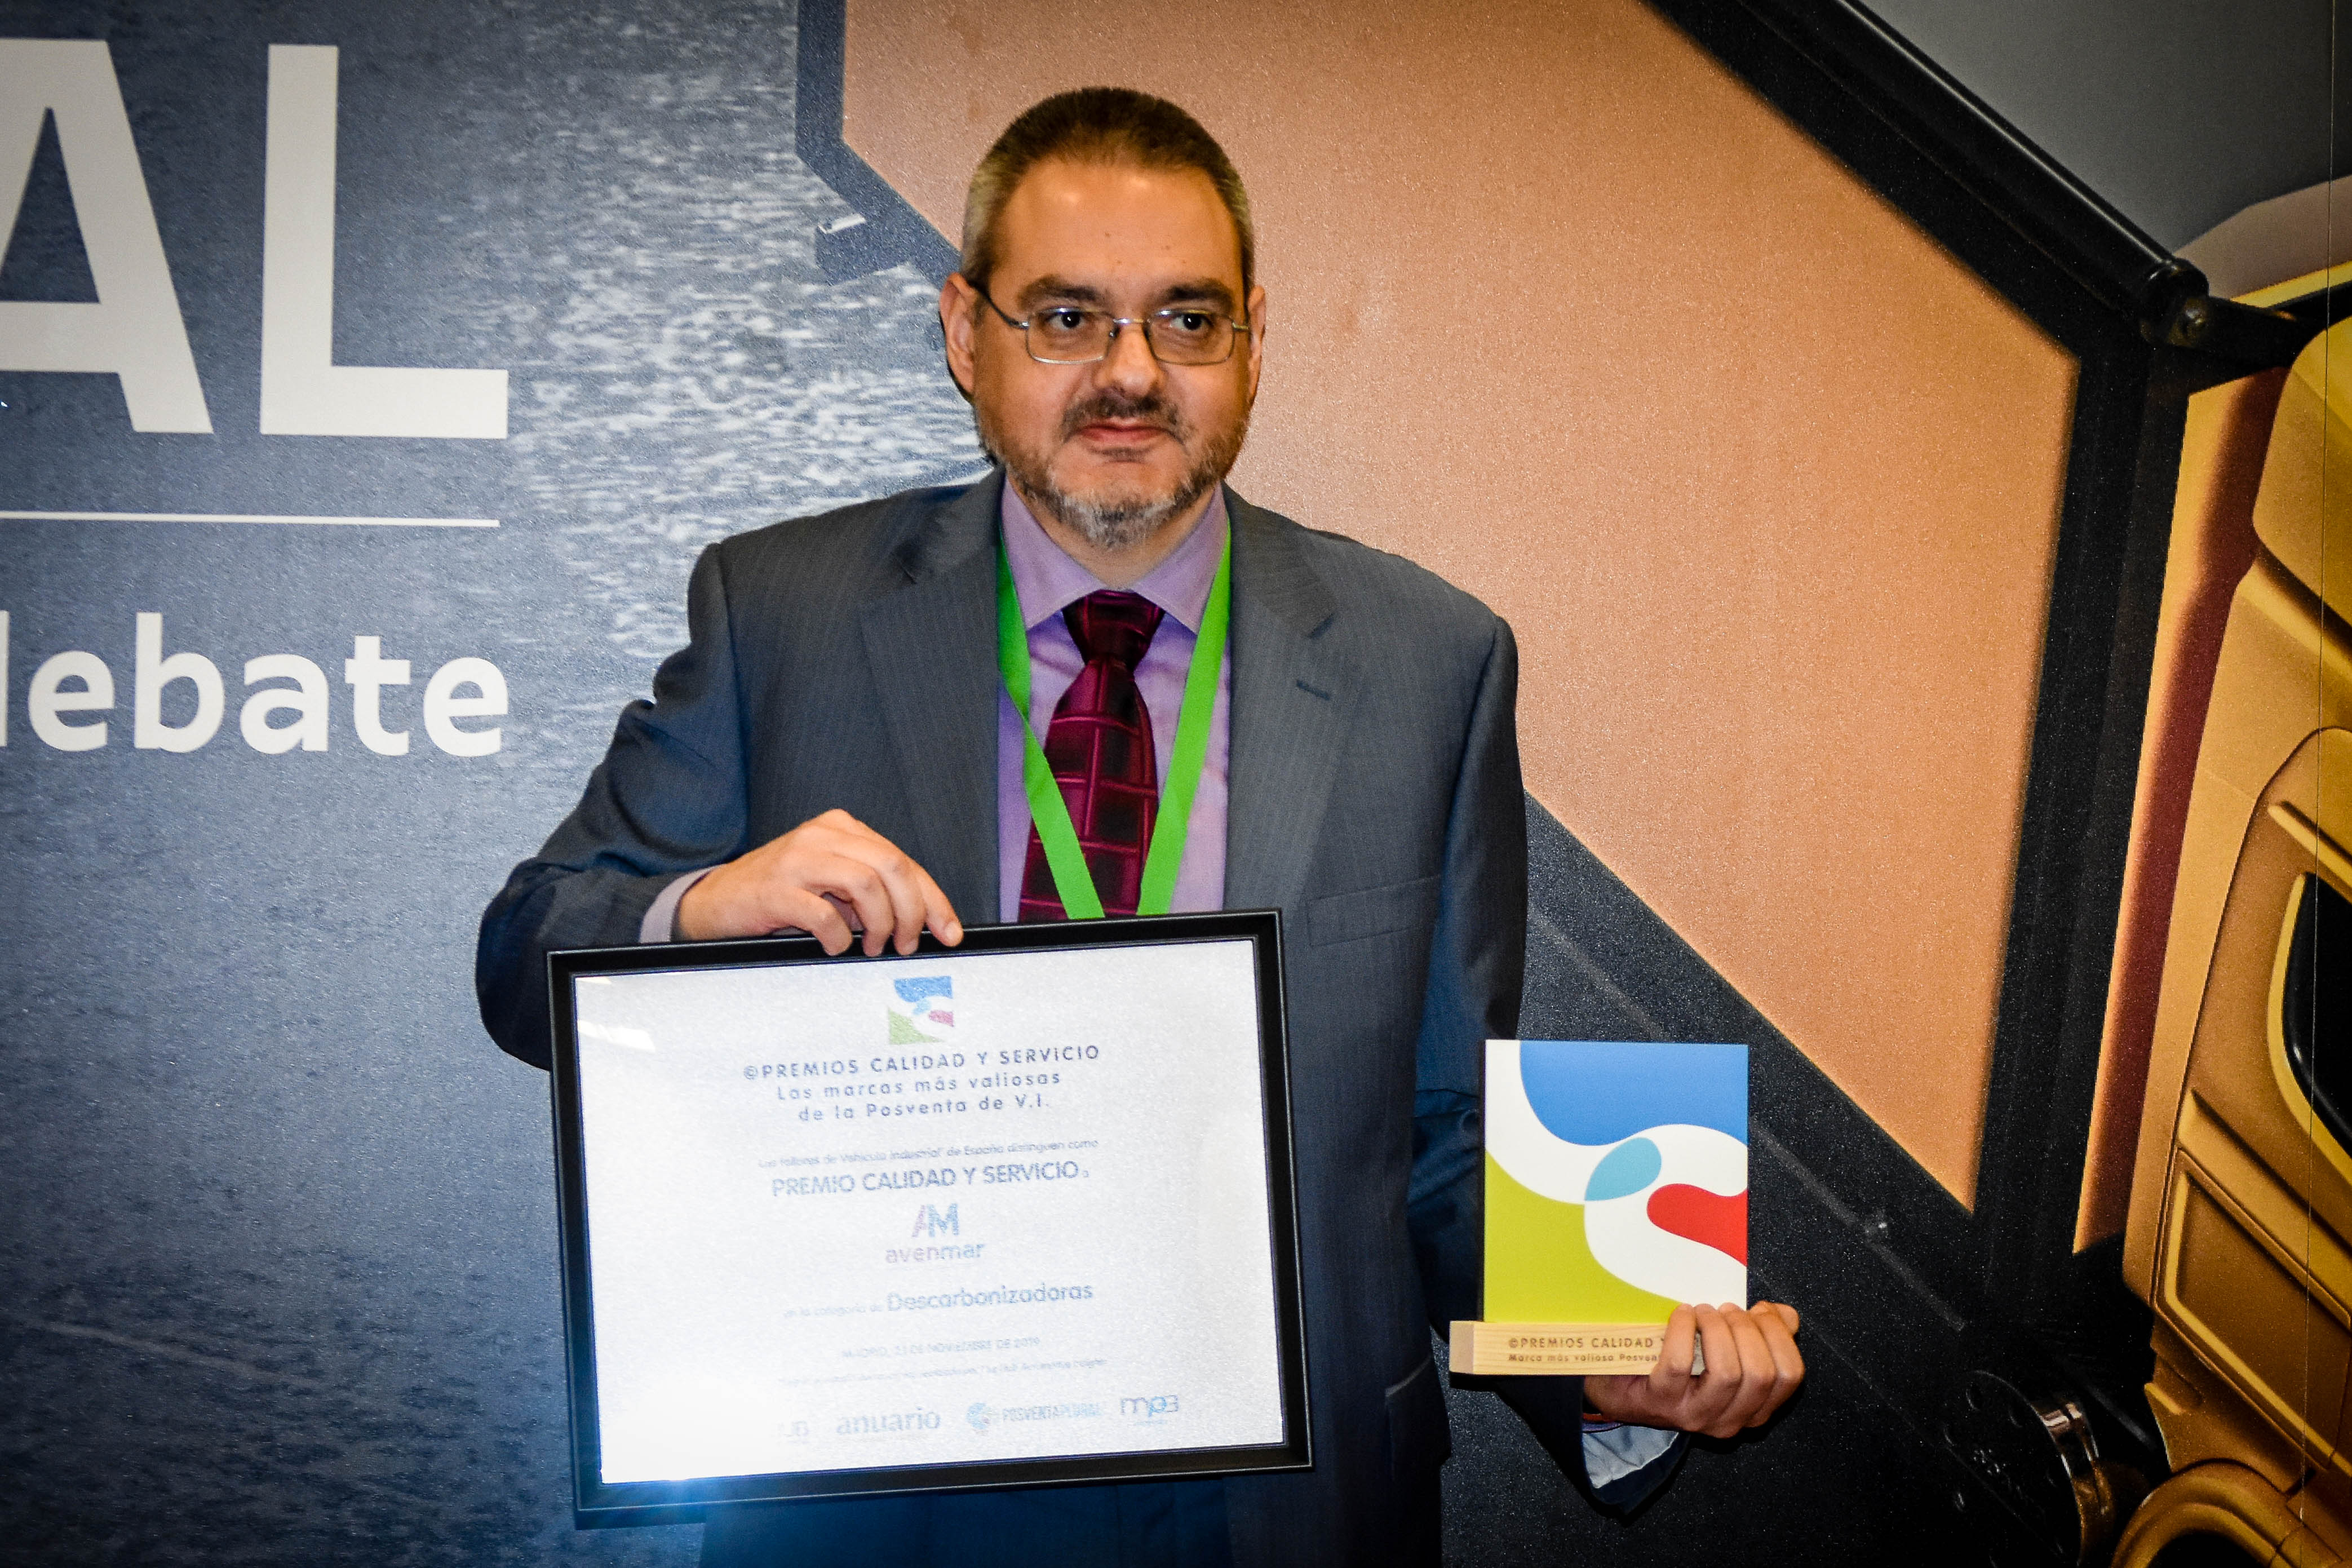 Premio Calidad y Servicio Avenmar Descarbonizadoras 2019